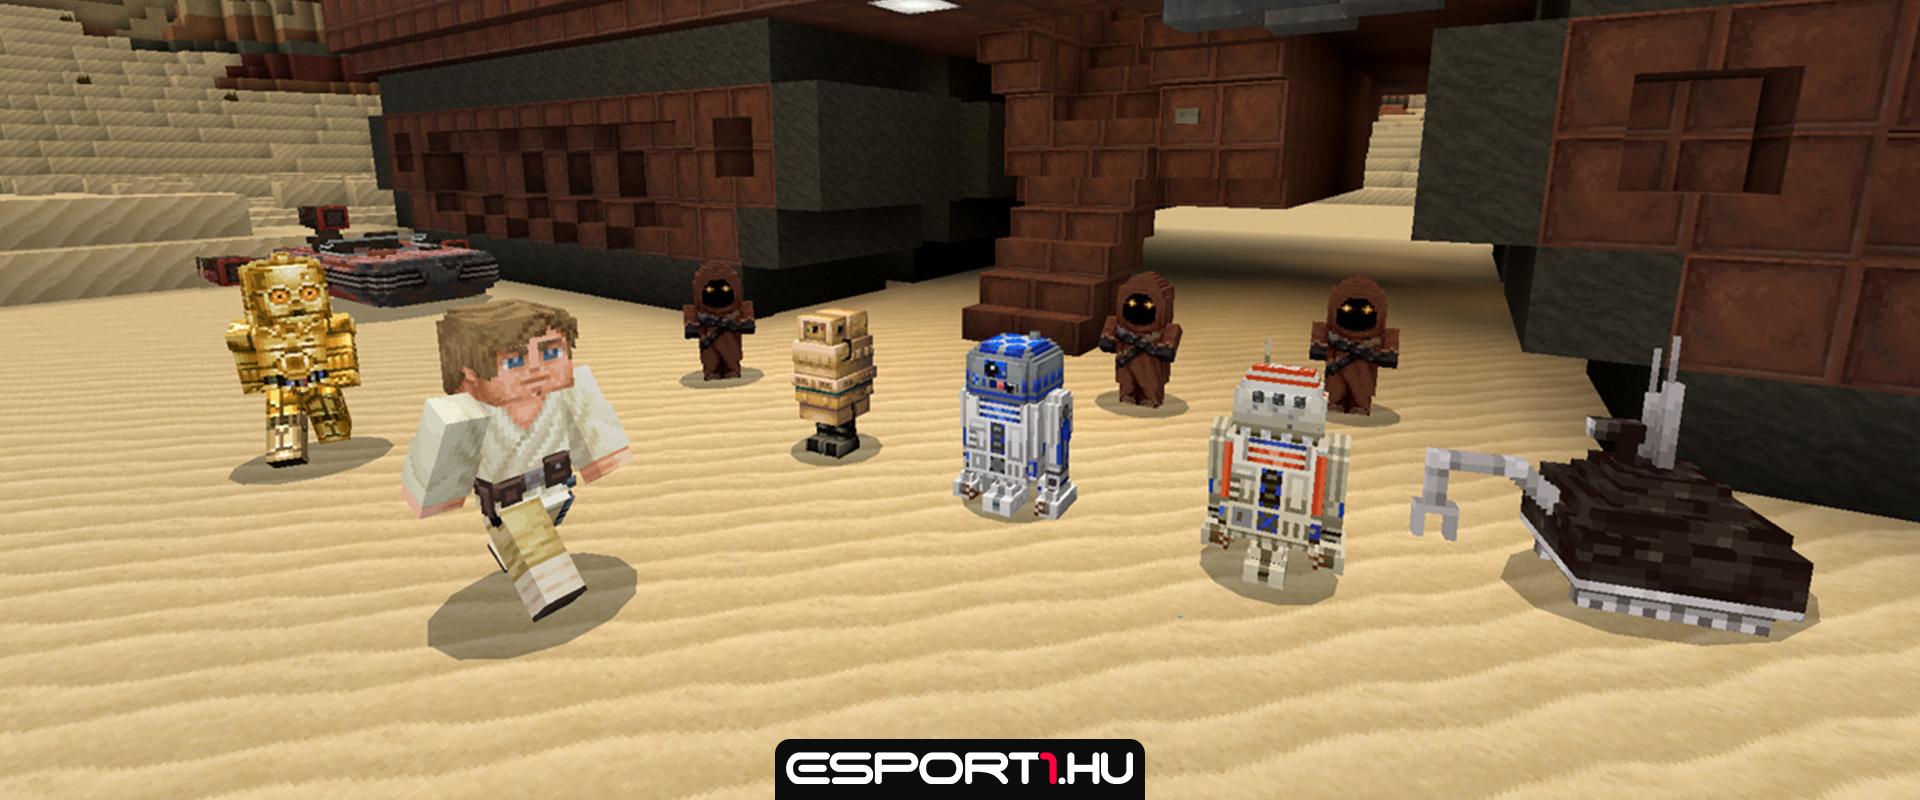 Egy űrállomás nyerte meg végül a Minecraftban meghirdetett Star Wars építkezési versenyt